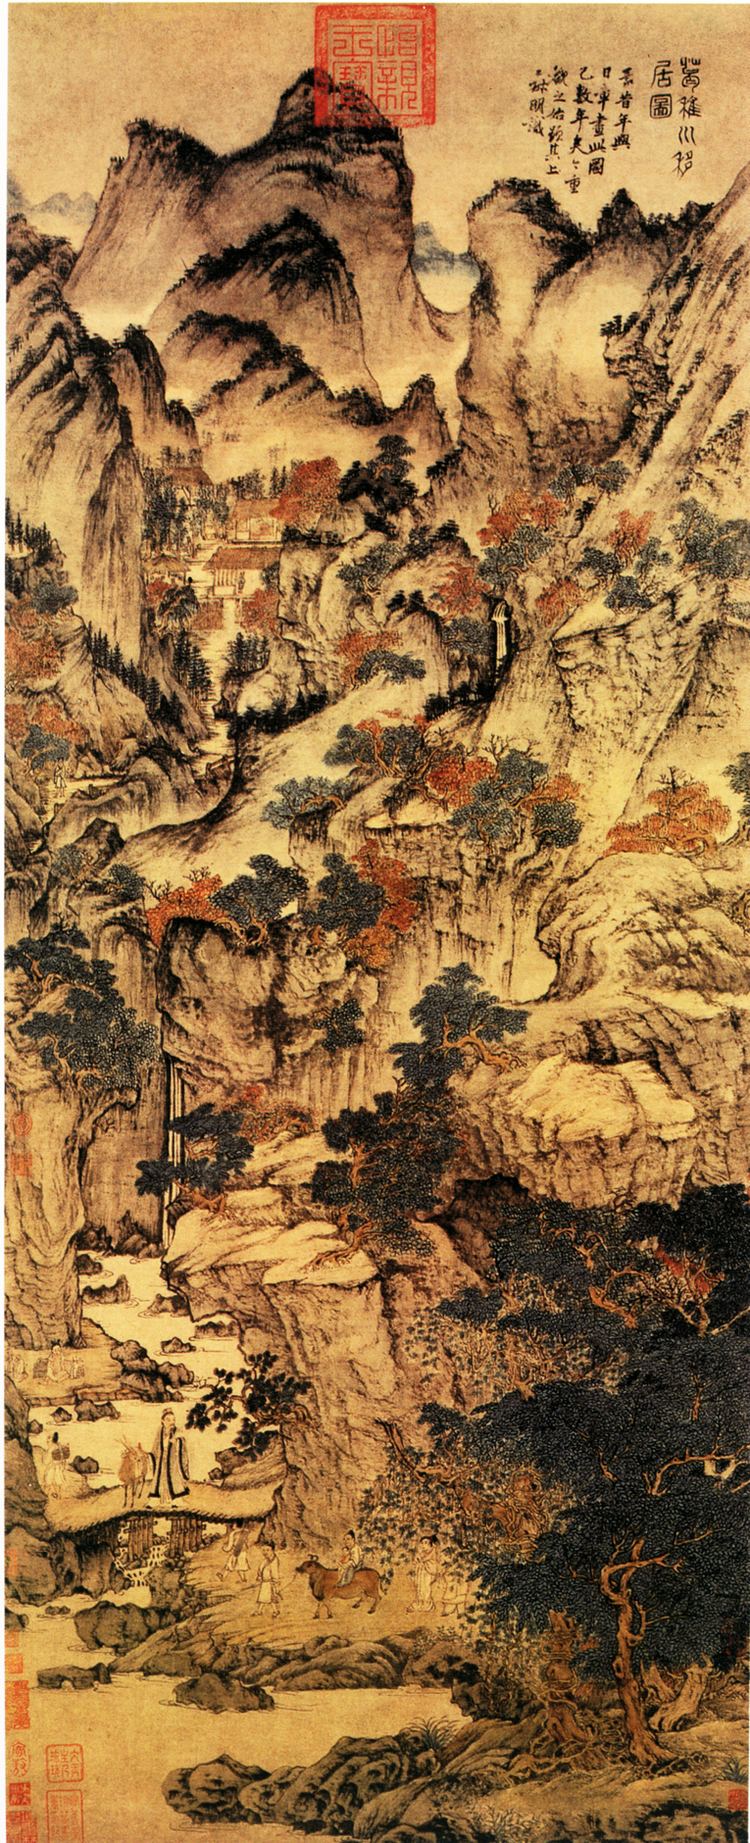 Wang Meng (artist) httpsuploadwikimediaorgwikipediacommons00